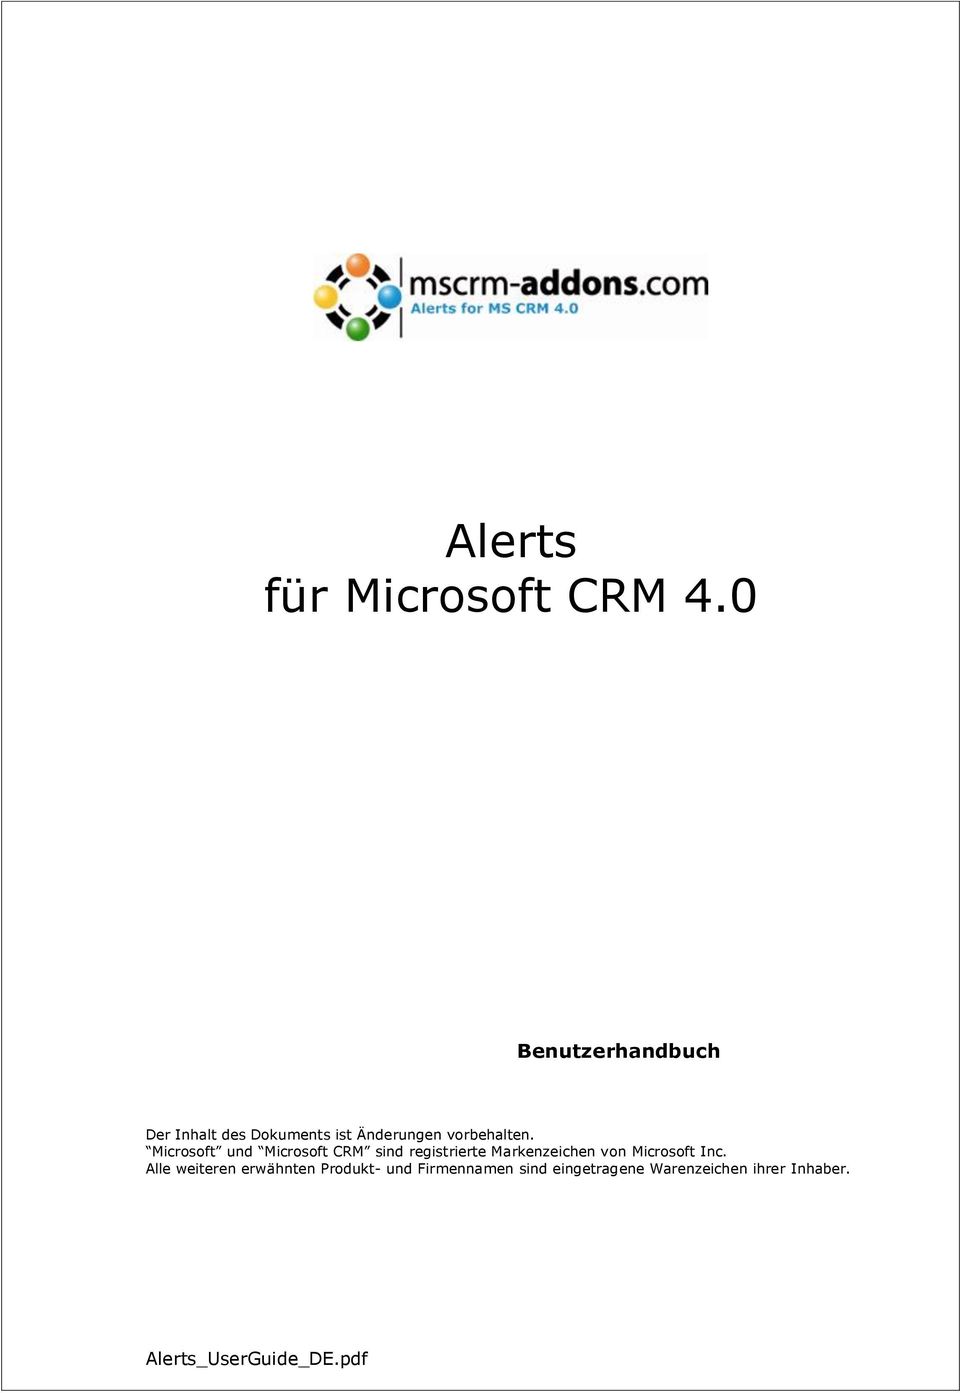 Microsoft und Microsoft CRM sind registrierte Markenzeichen von Microsoft